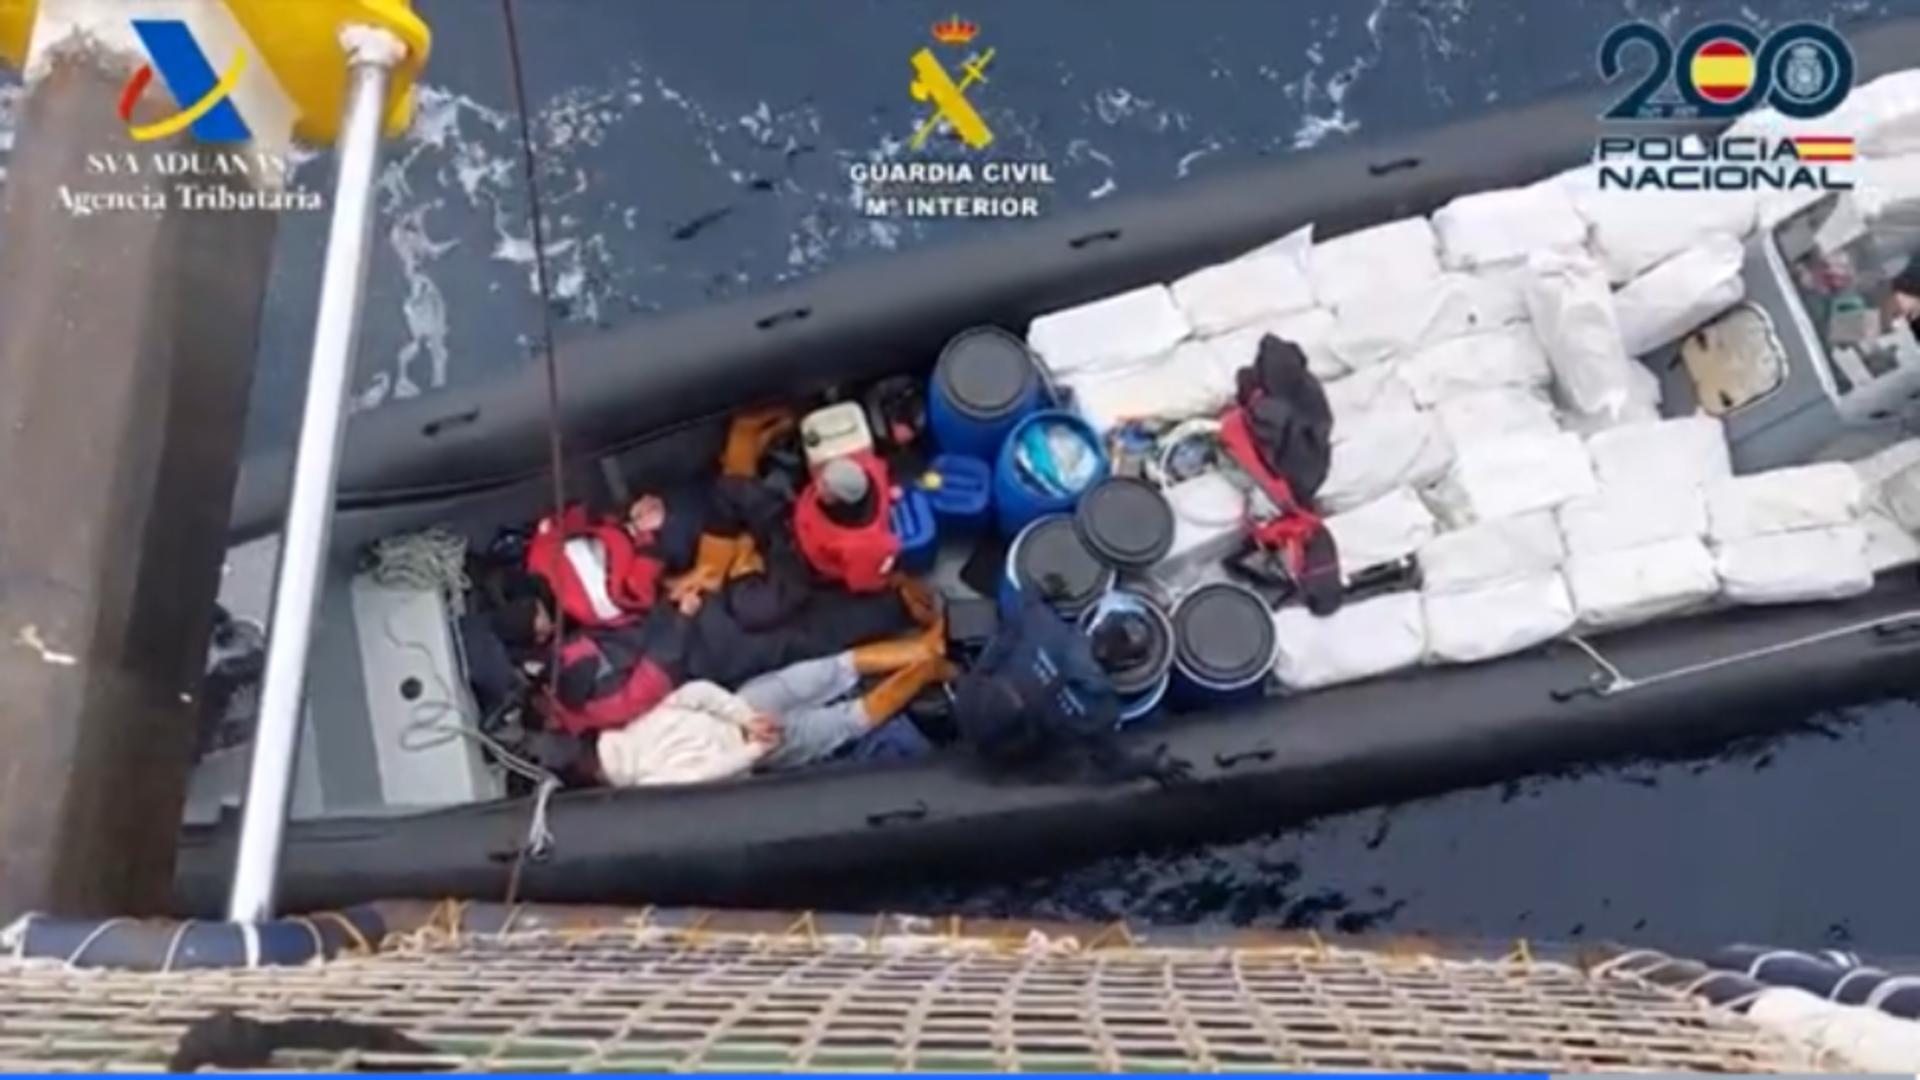 Un român și un moldovean au fost prinși cu patru tone de cocaină în barcă. Foto: larazon.es